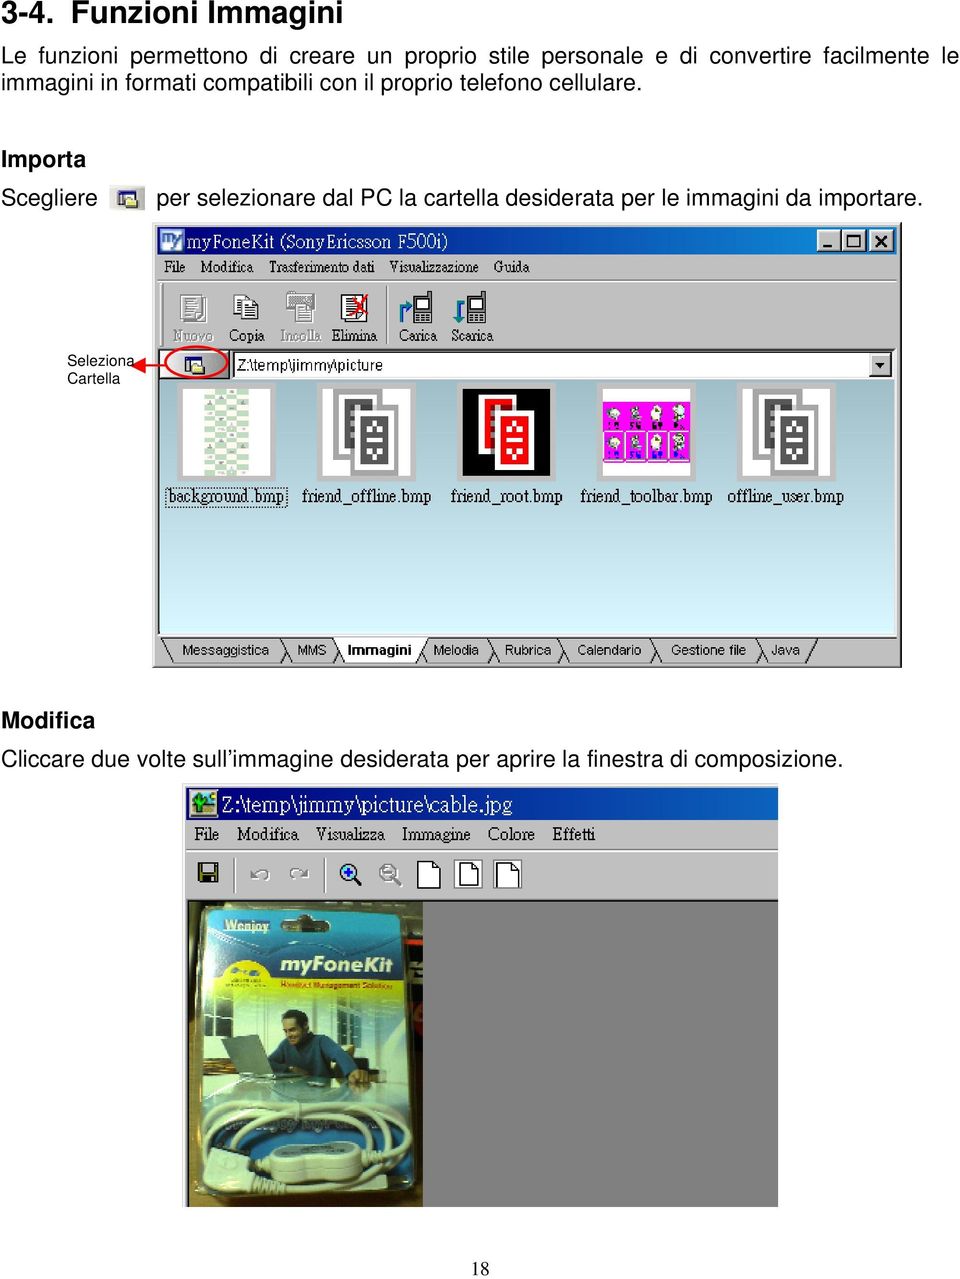 Importa Scegliere per selezionare dal PC la cartella desiderata per le immagini da importare.